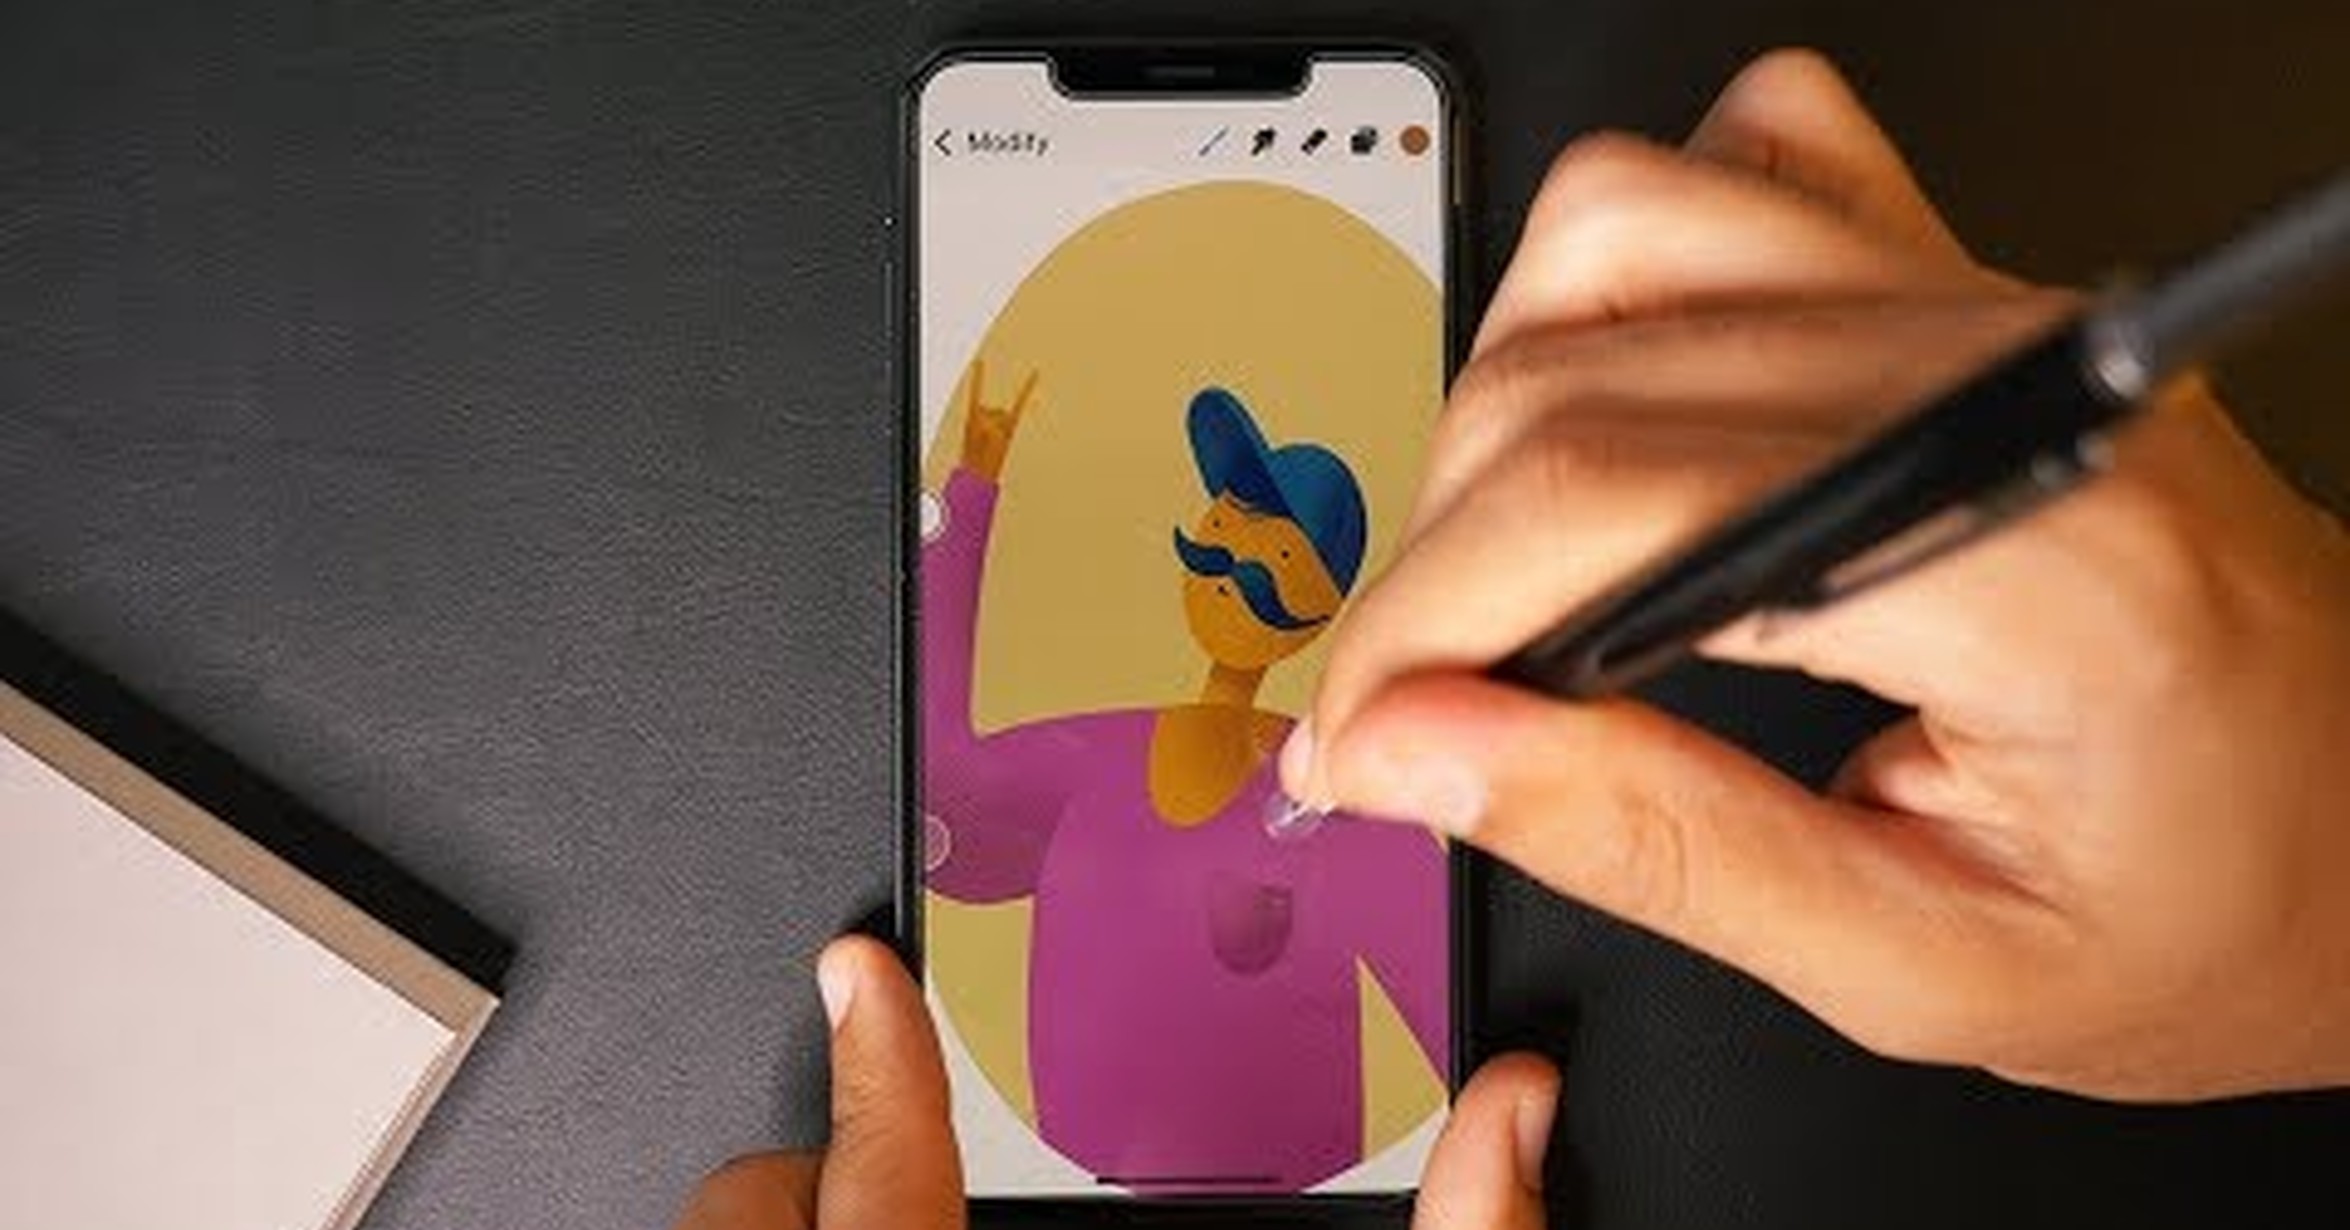 Как рисовать на телефоне друга называется приложение. Рисовалка на айфон. Айфон для рисования. Приложения для рисования на iphone. Приложение для рисования на айфон.